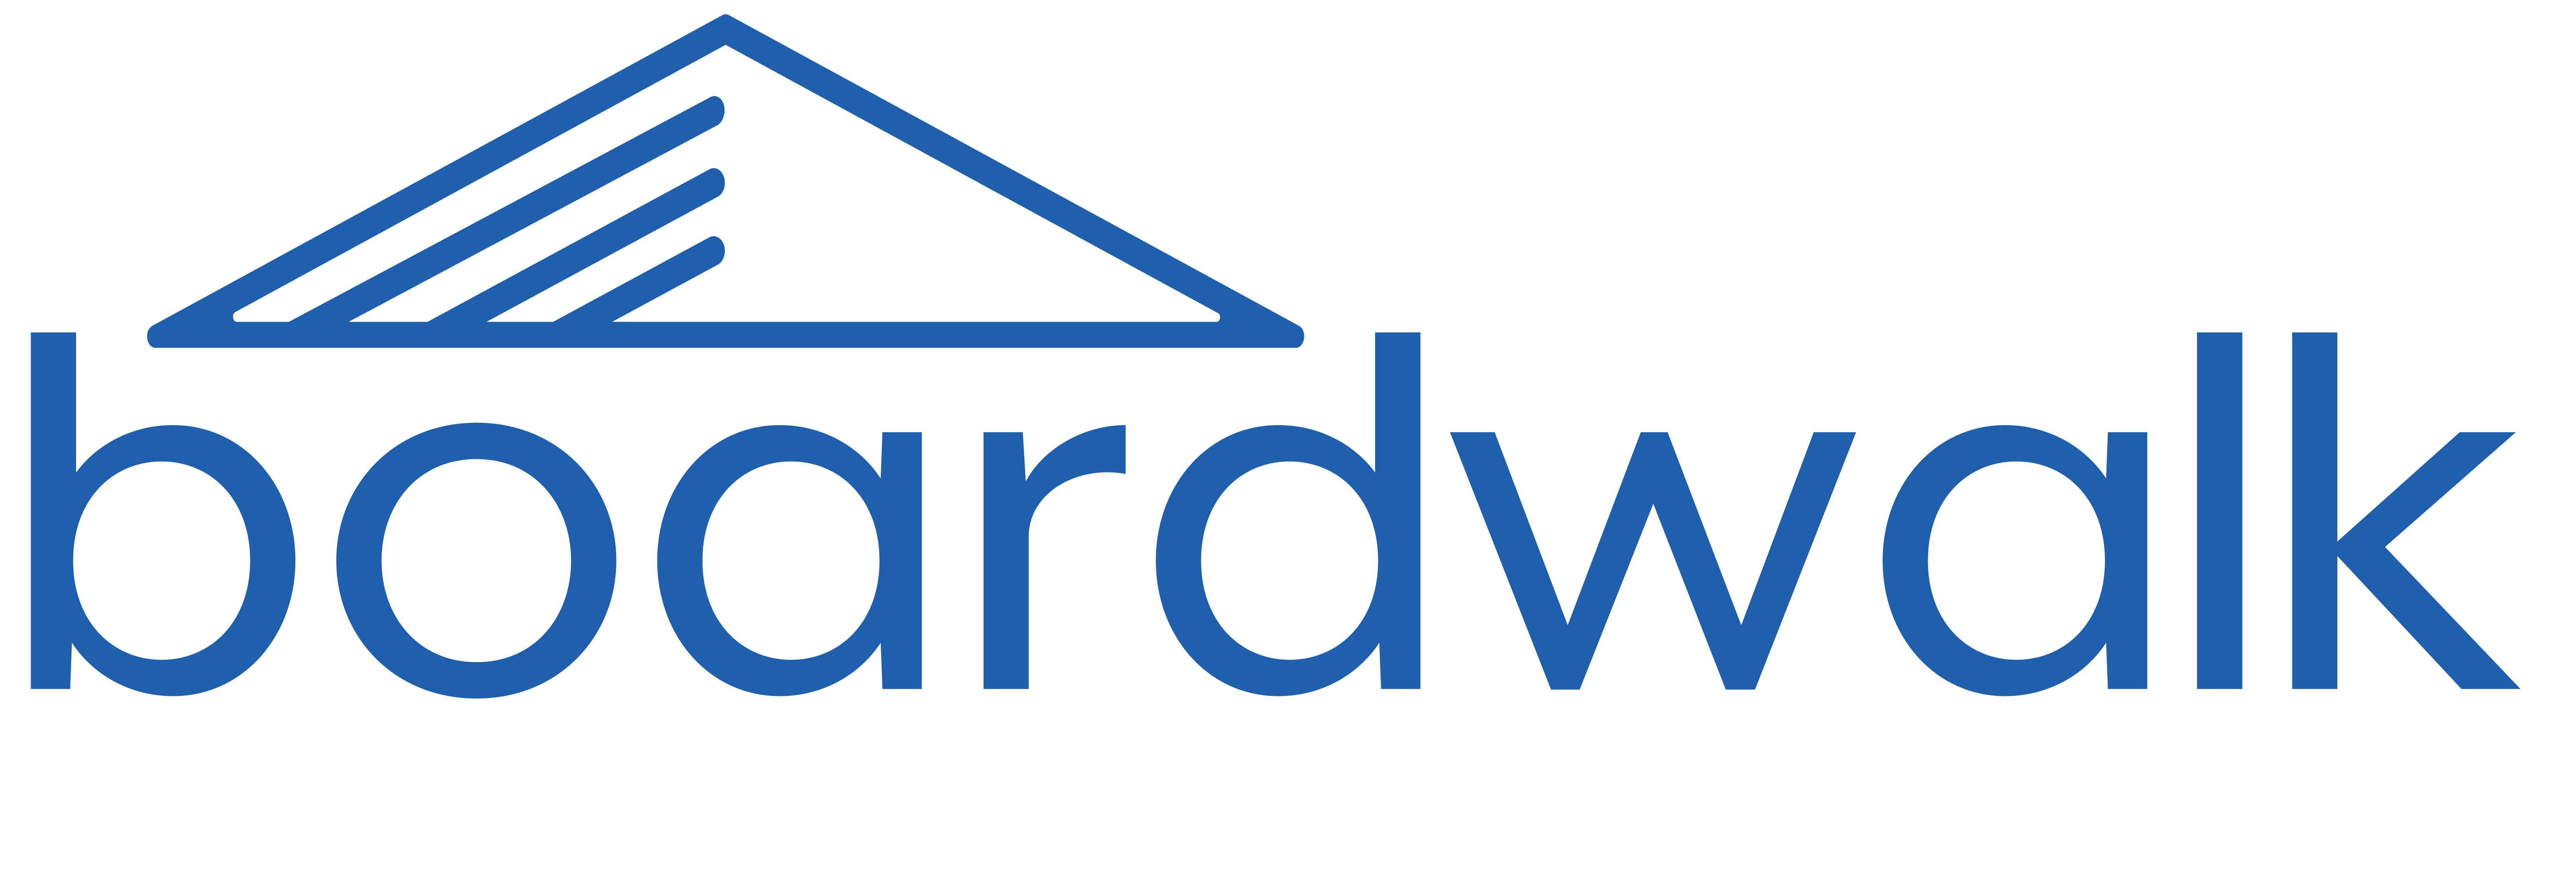 boardwalk-corporate-logo-blue-01.png